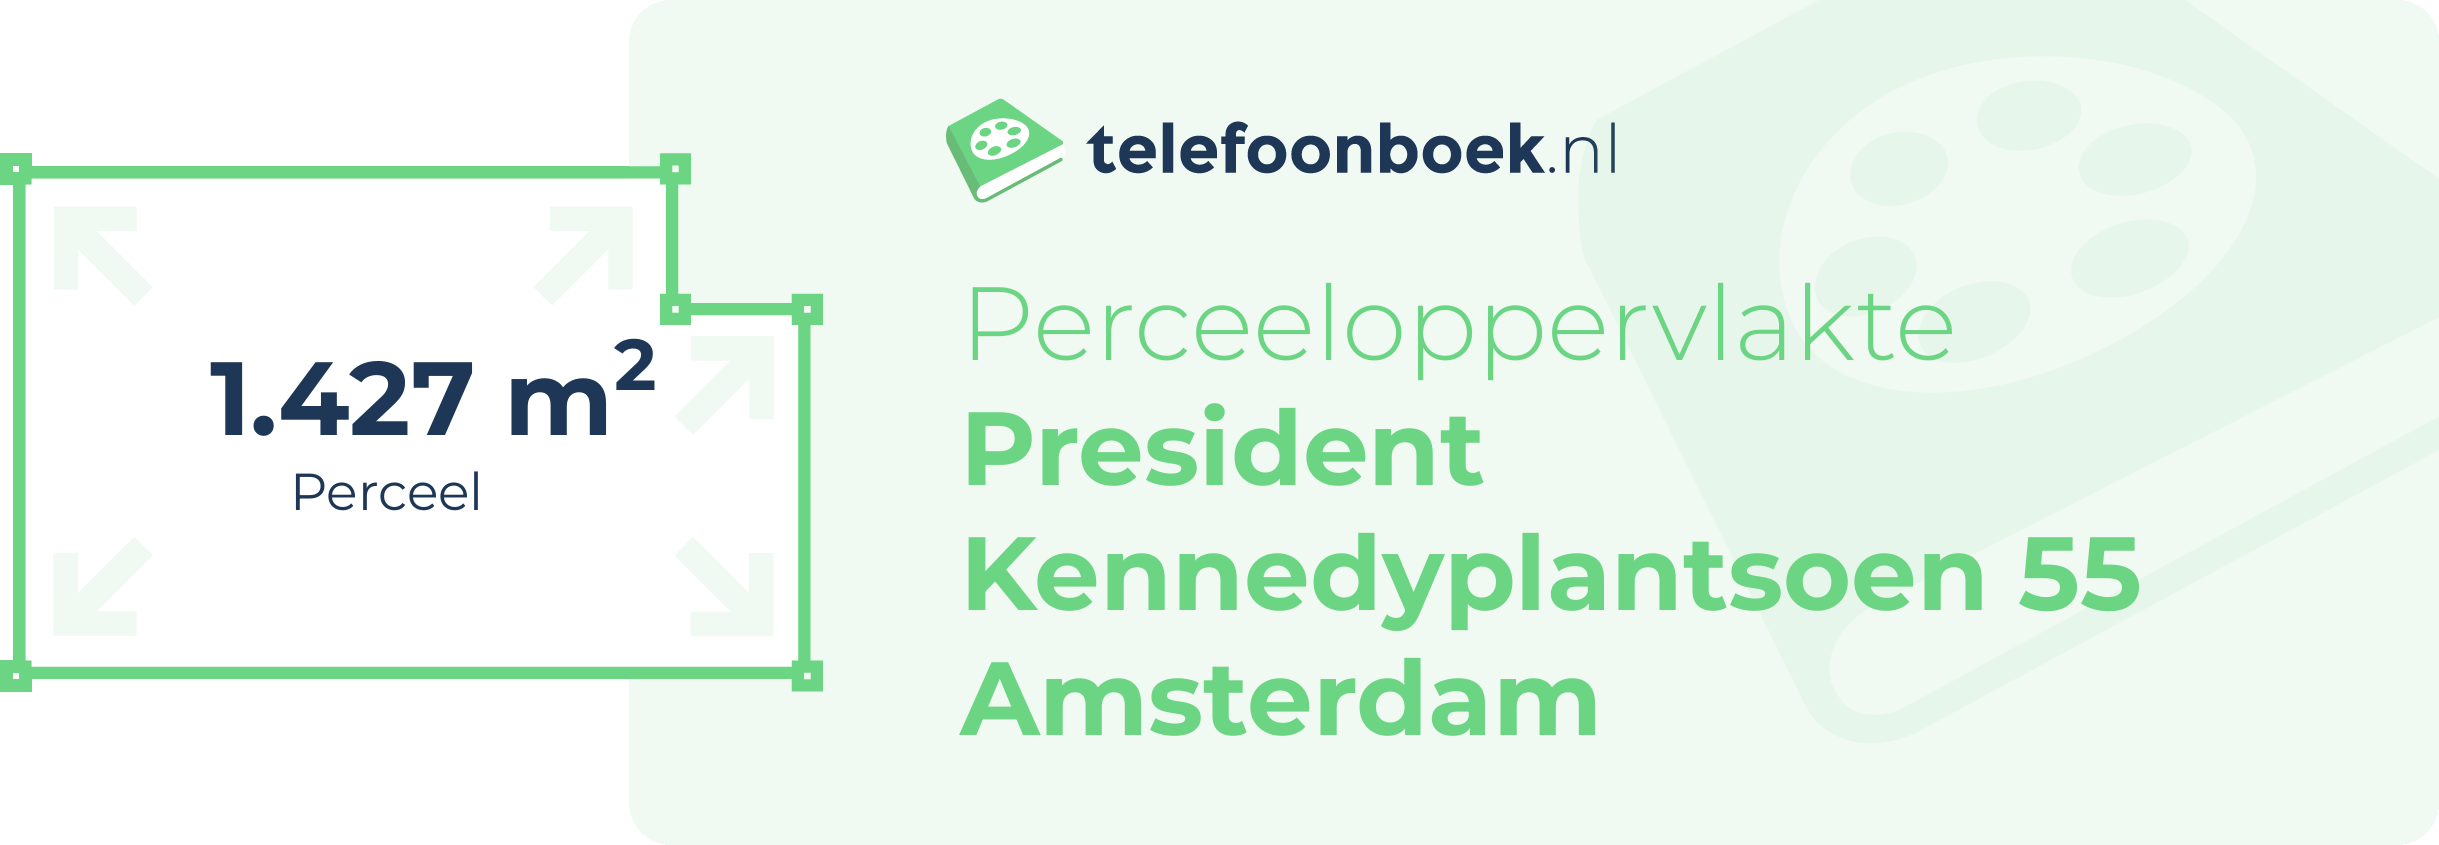 Perceeloppervlakte President Kennedyplantsoen 55 Amsterdam